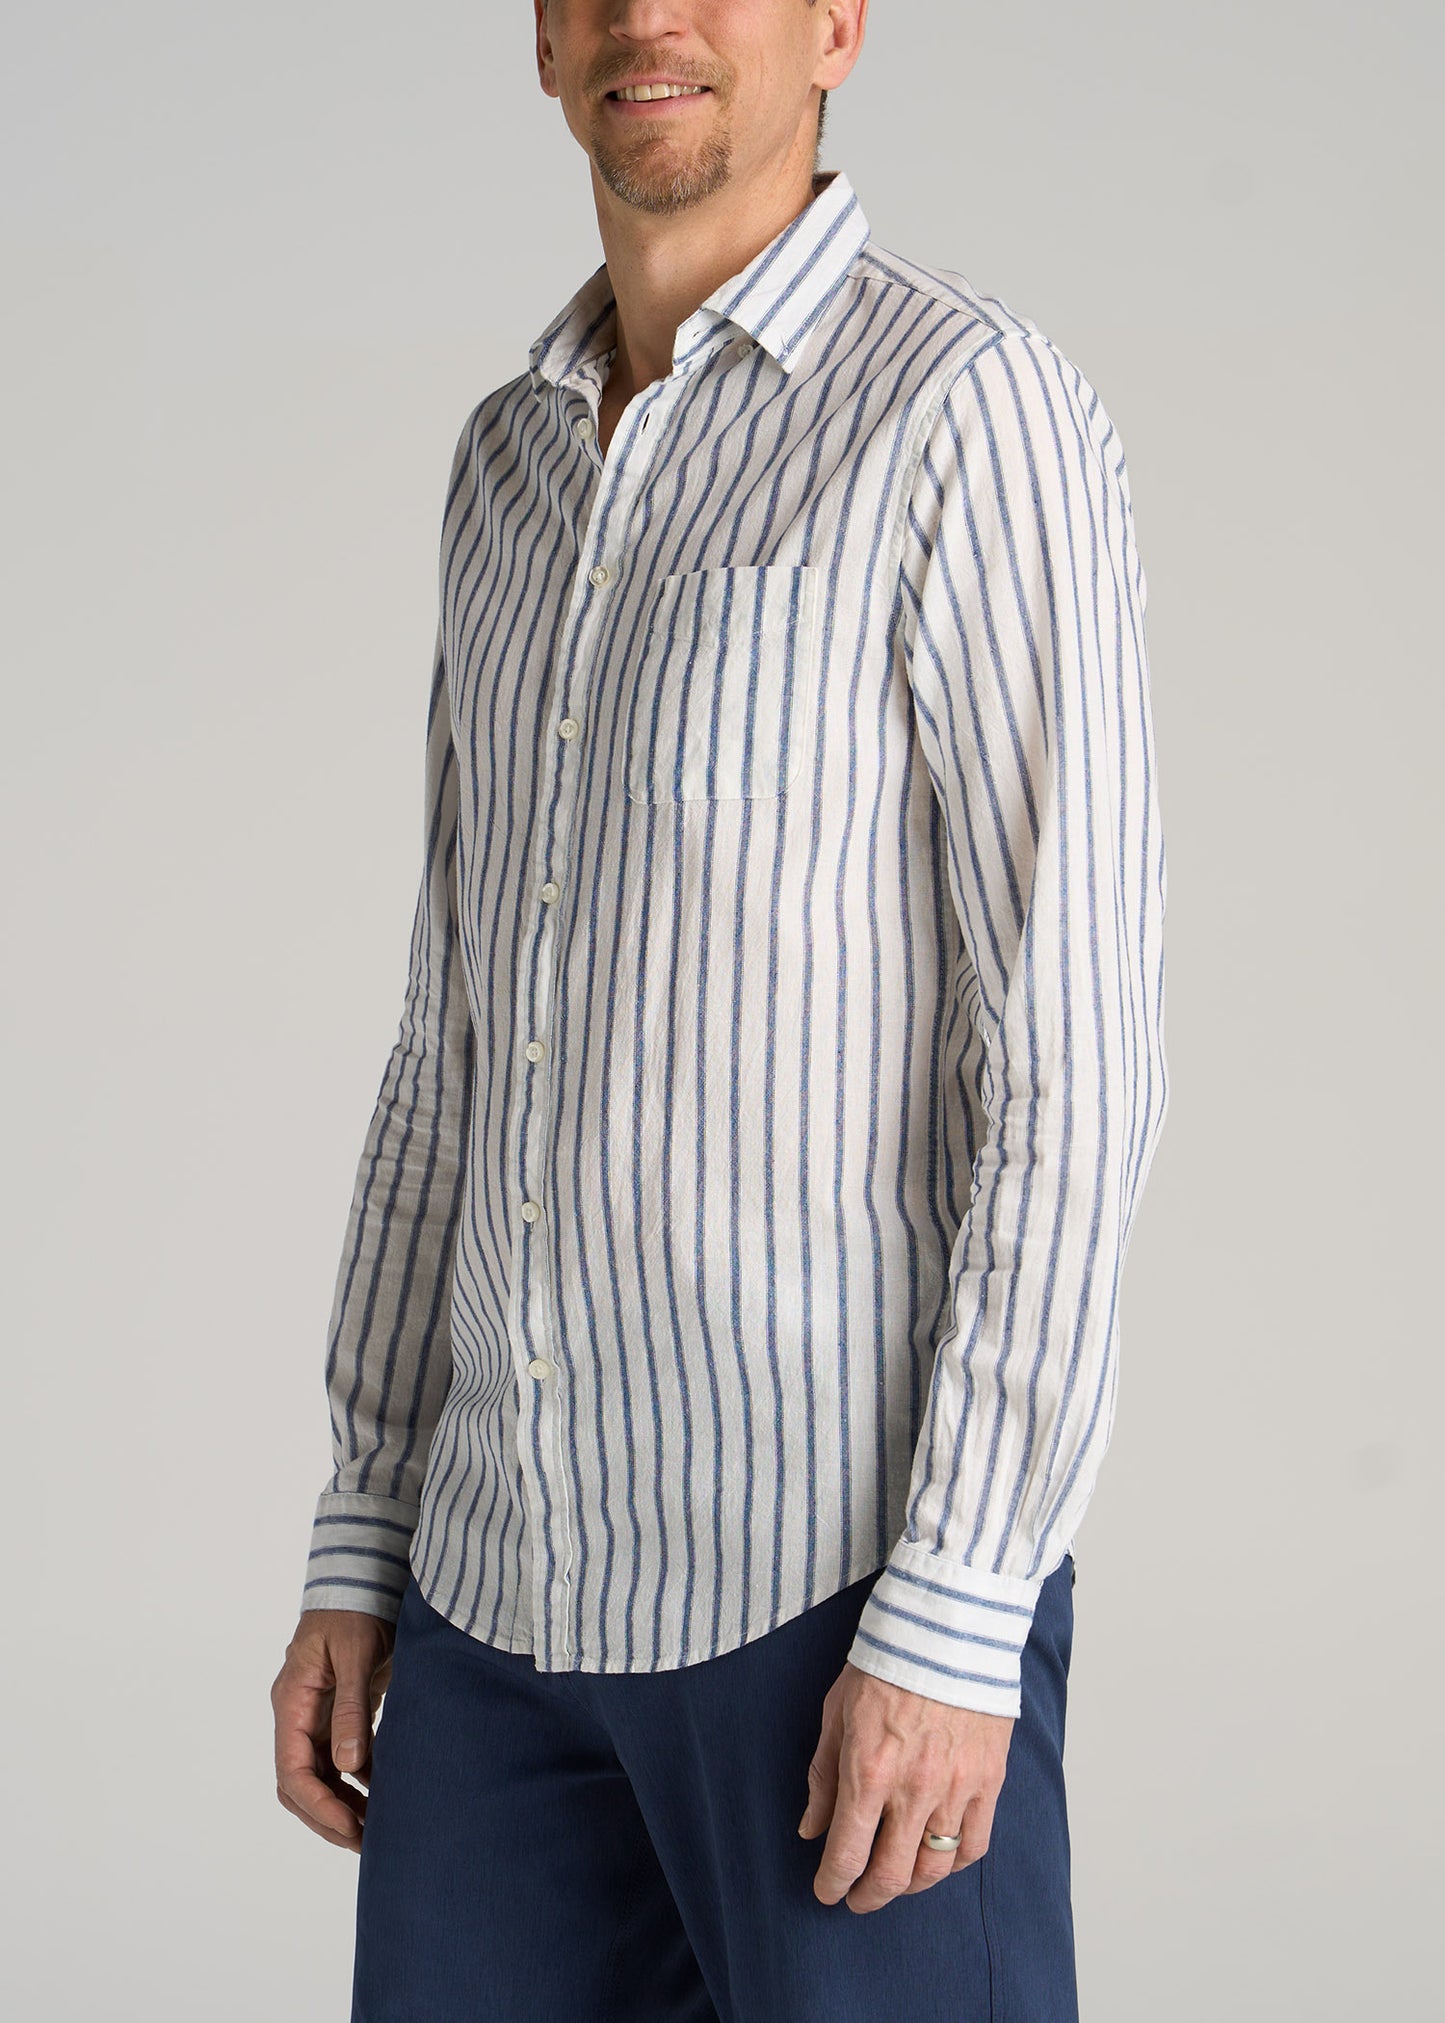 Men's Tall Linen Long Sleeve Shirt Navy Stripe | American Tall